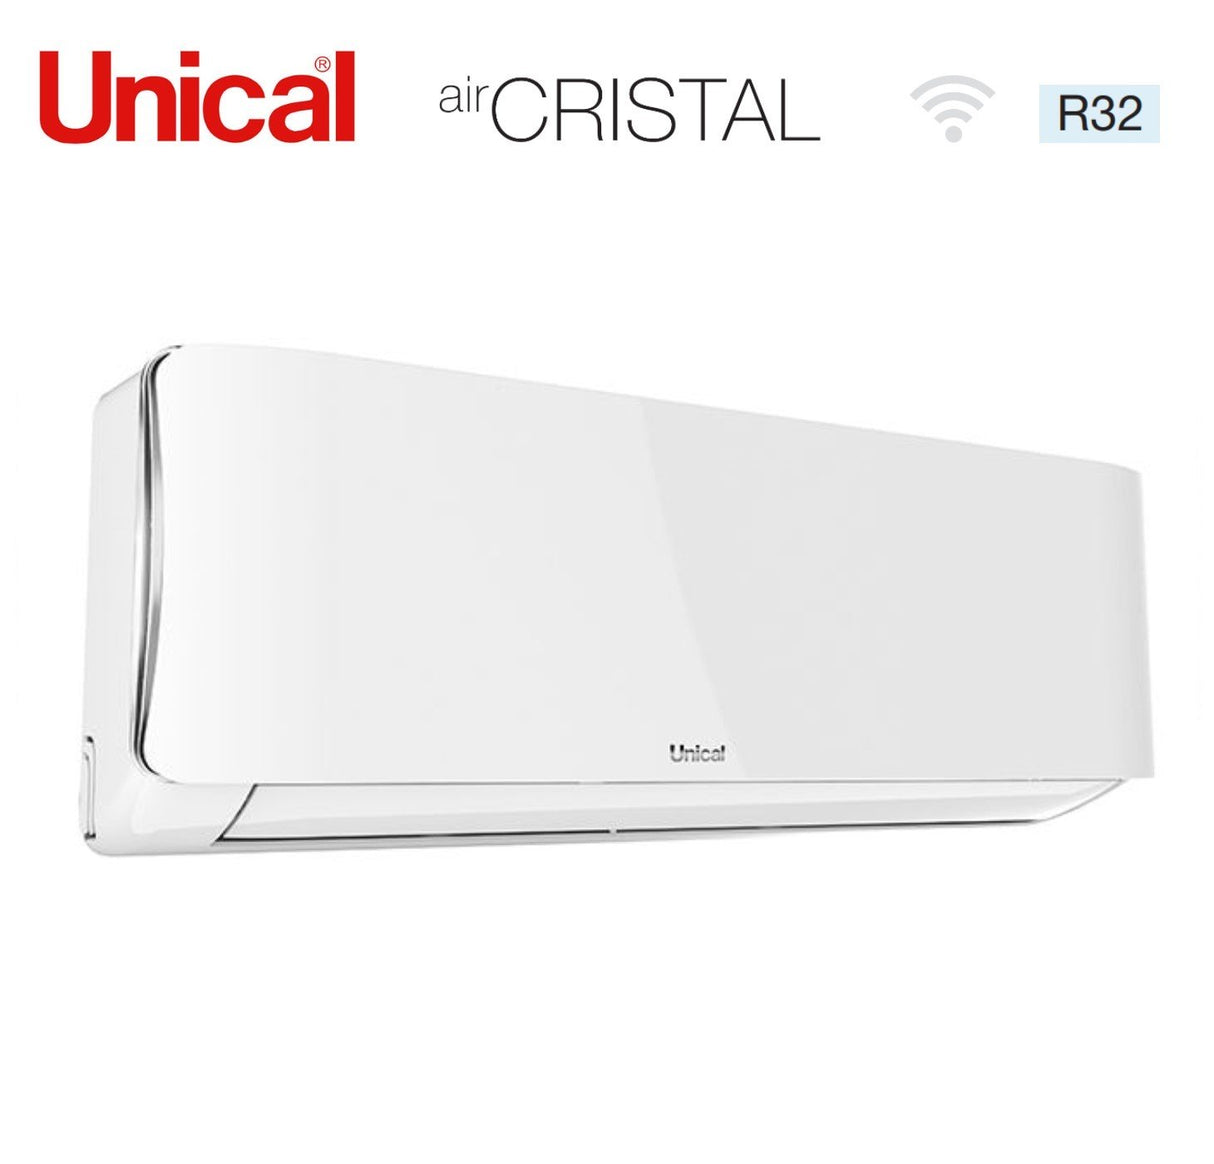 immagine-3-unical-climatizzatore-condizionatore-unical-quadri-split-inverter-serie-air-cristal-10101313-con-kmx4-36he-r-32-wi-fi-optional-10000100001300013000